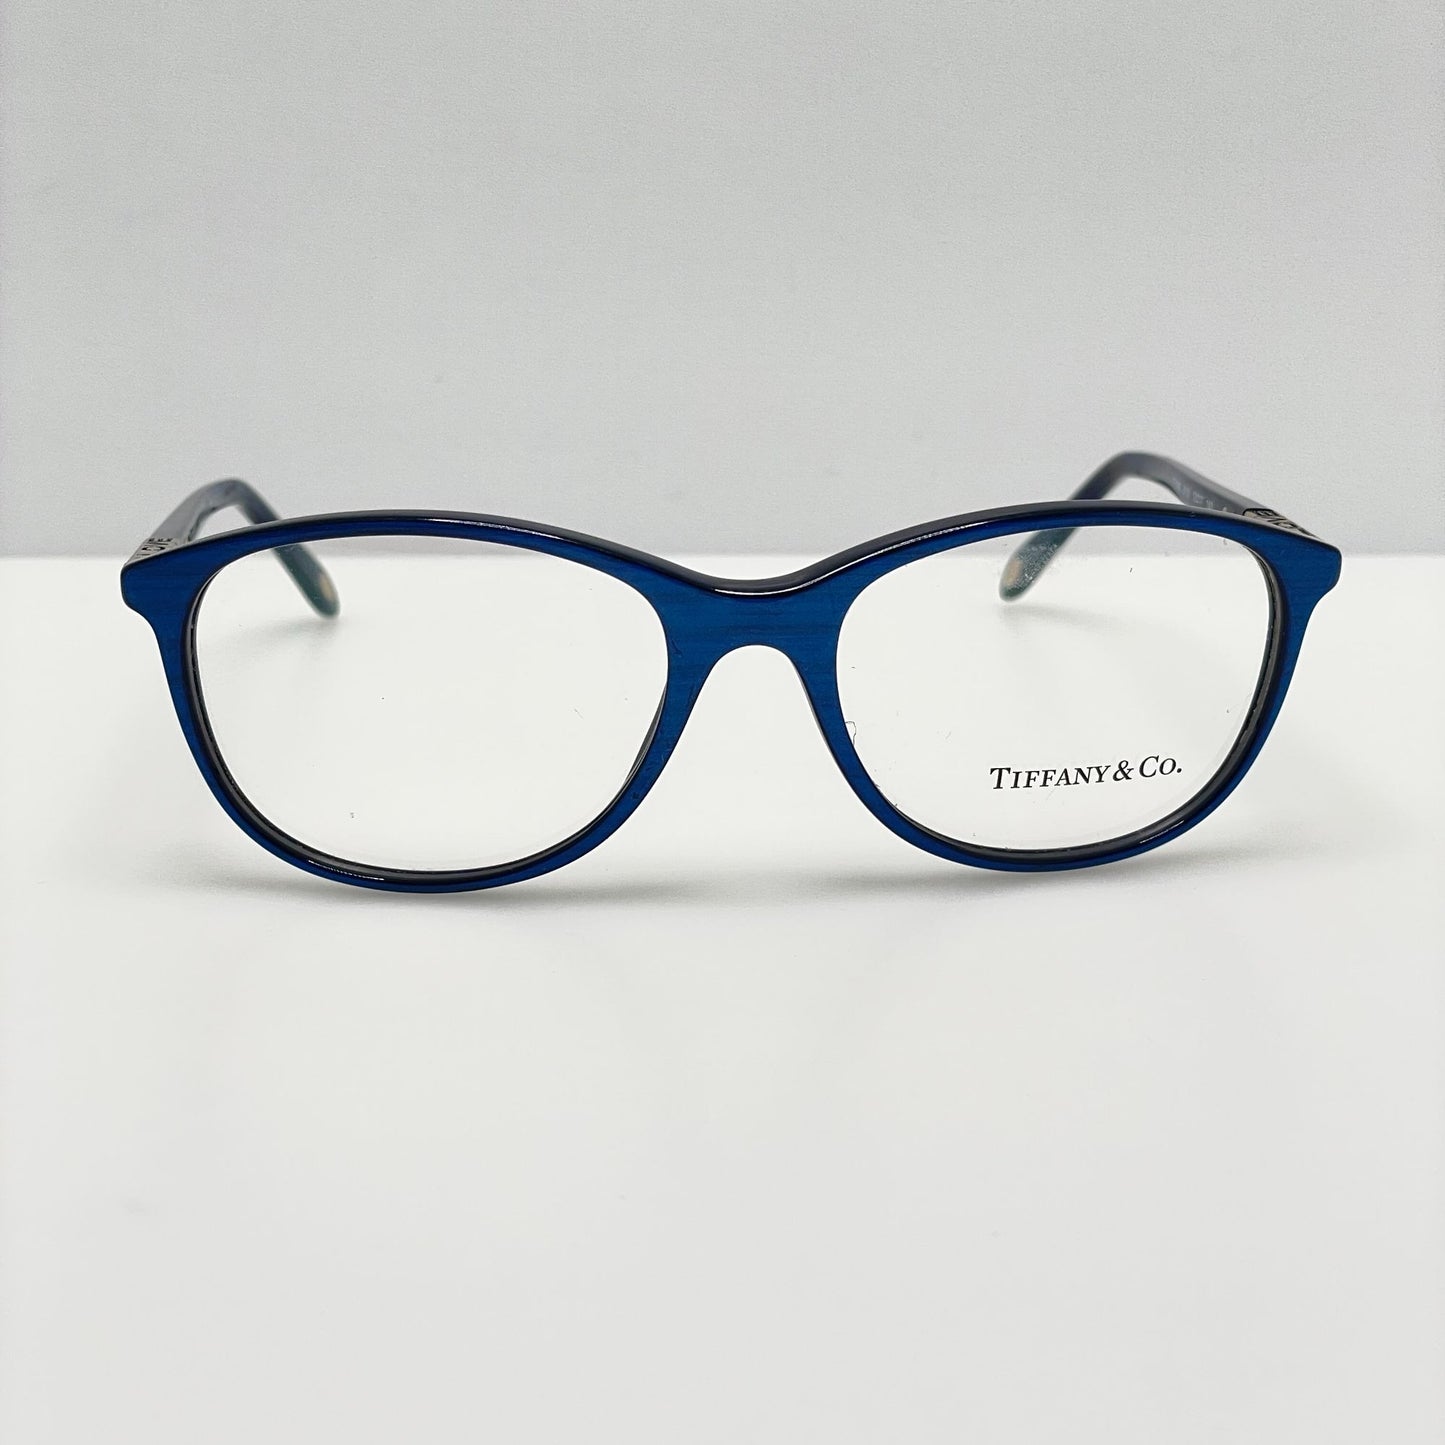 Tiffany & Co. Eyeglasses Eye Glasses Frames TF 2083 8159 53-17-140